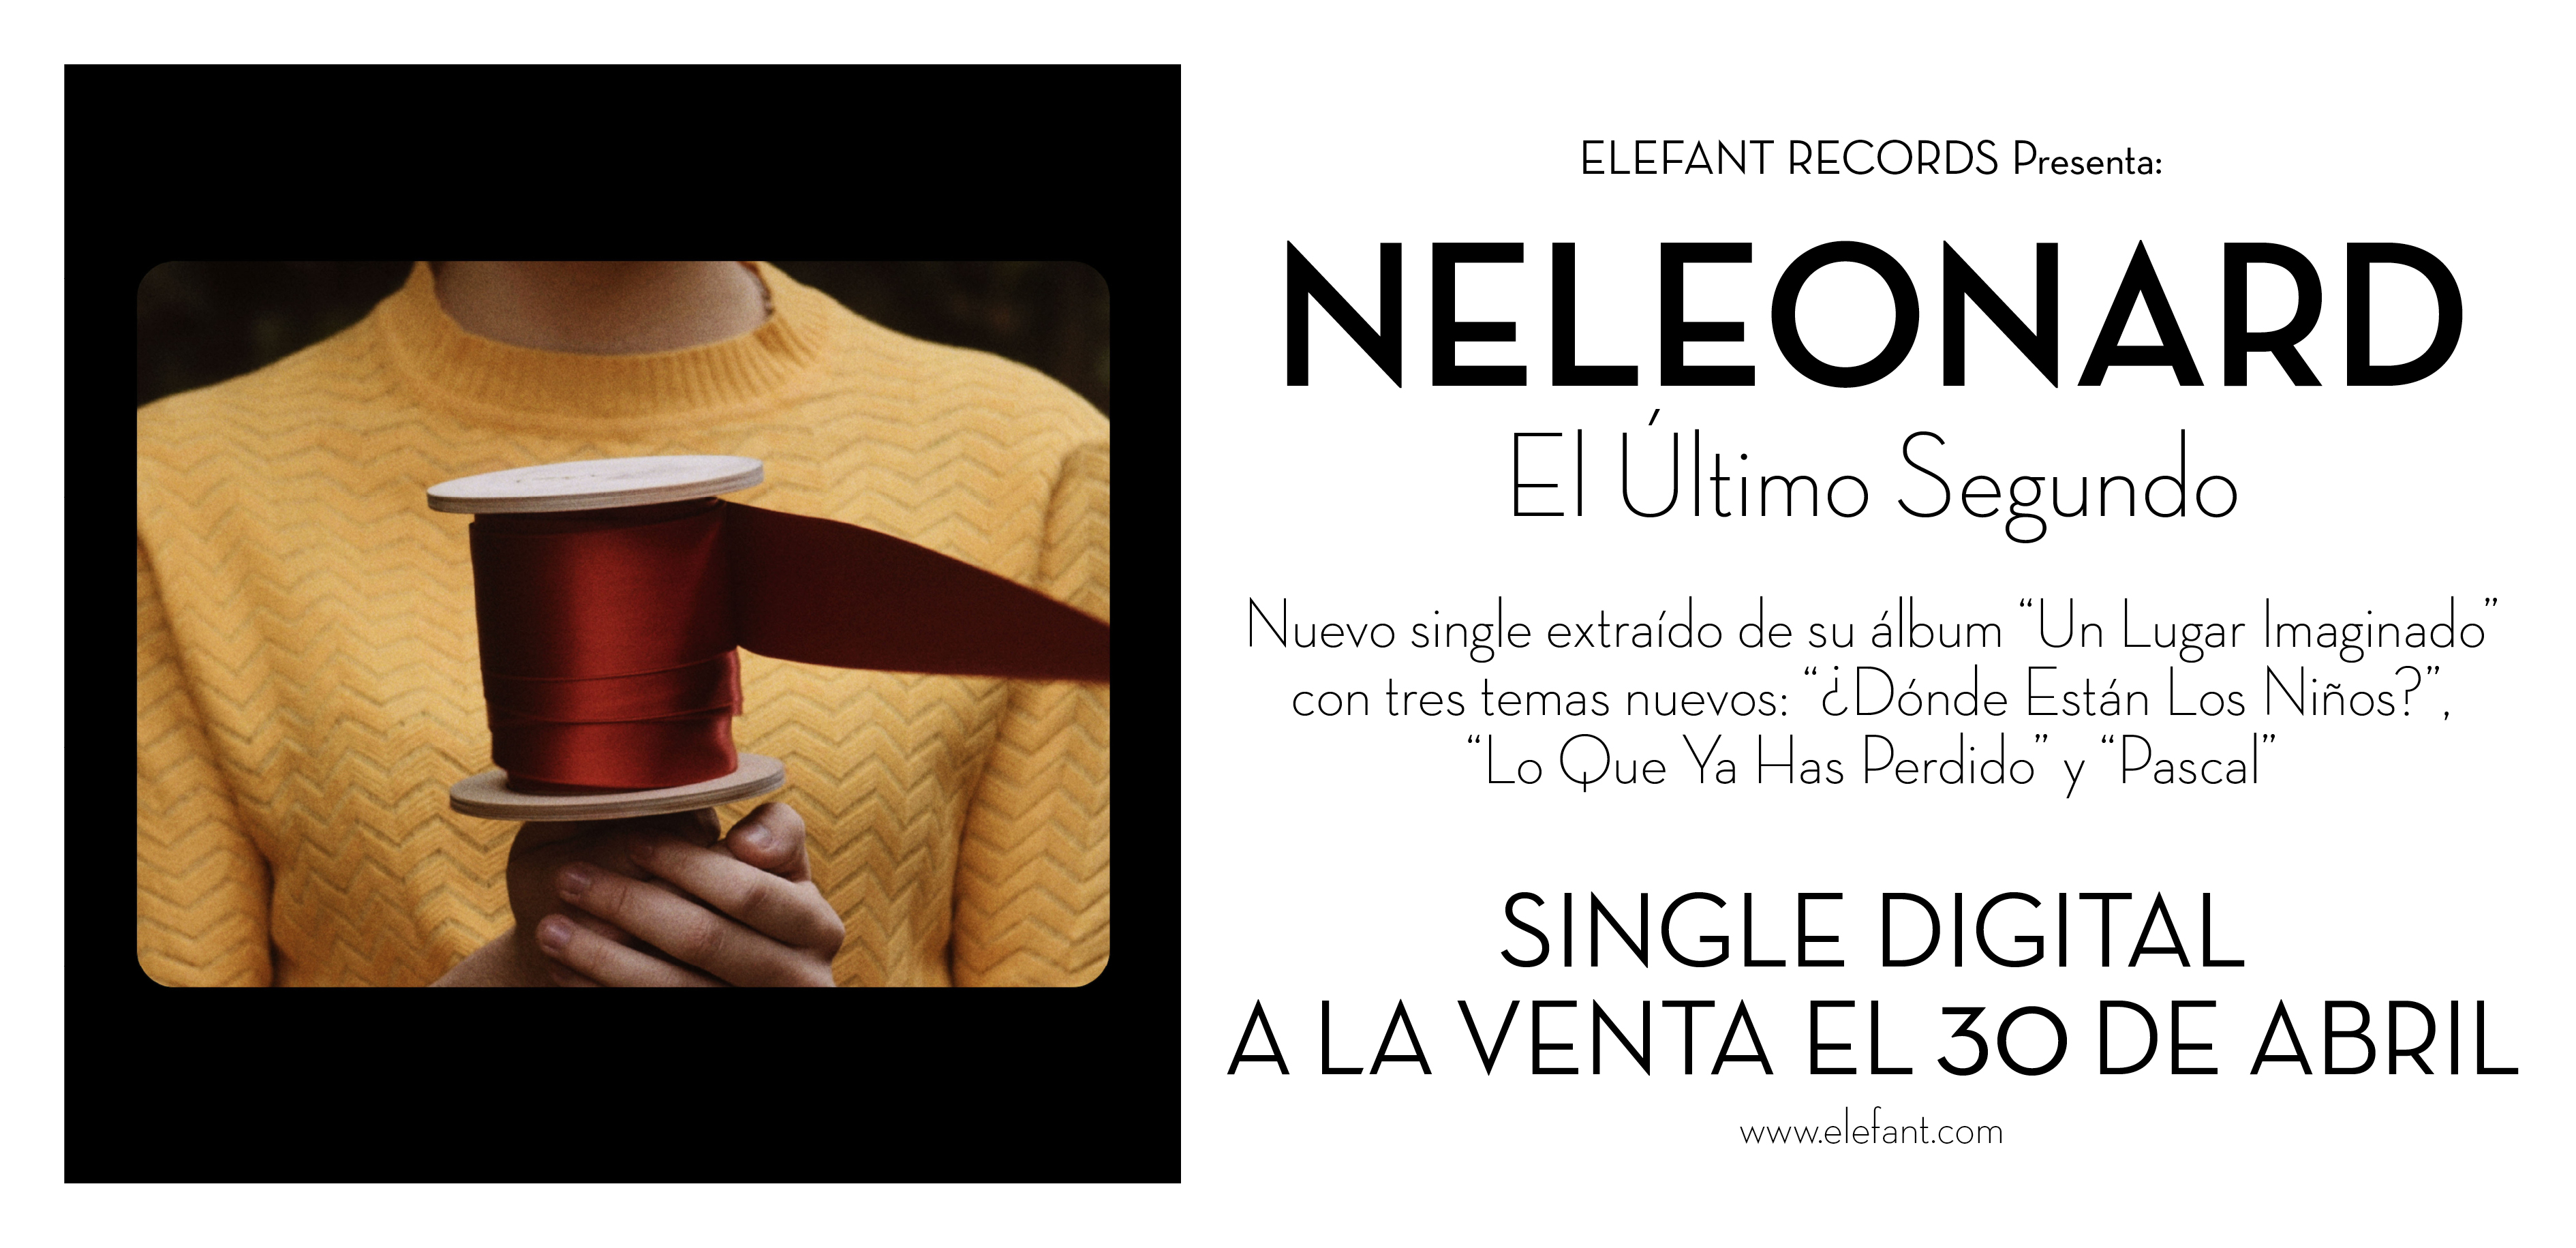 Neleonard "El Último Segundo" Single Digital